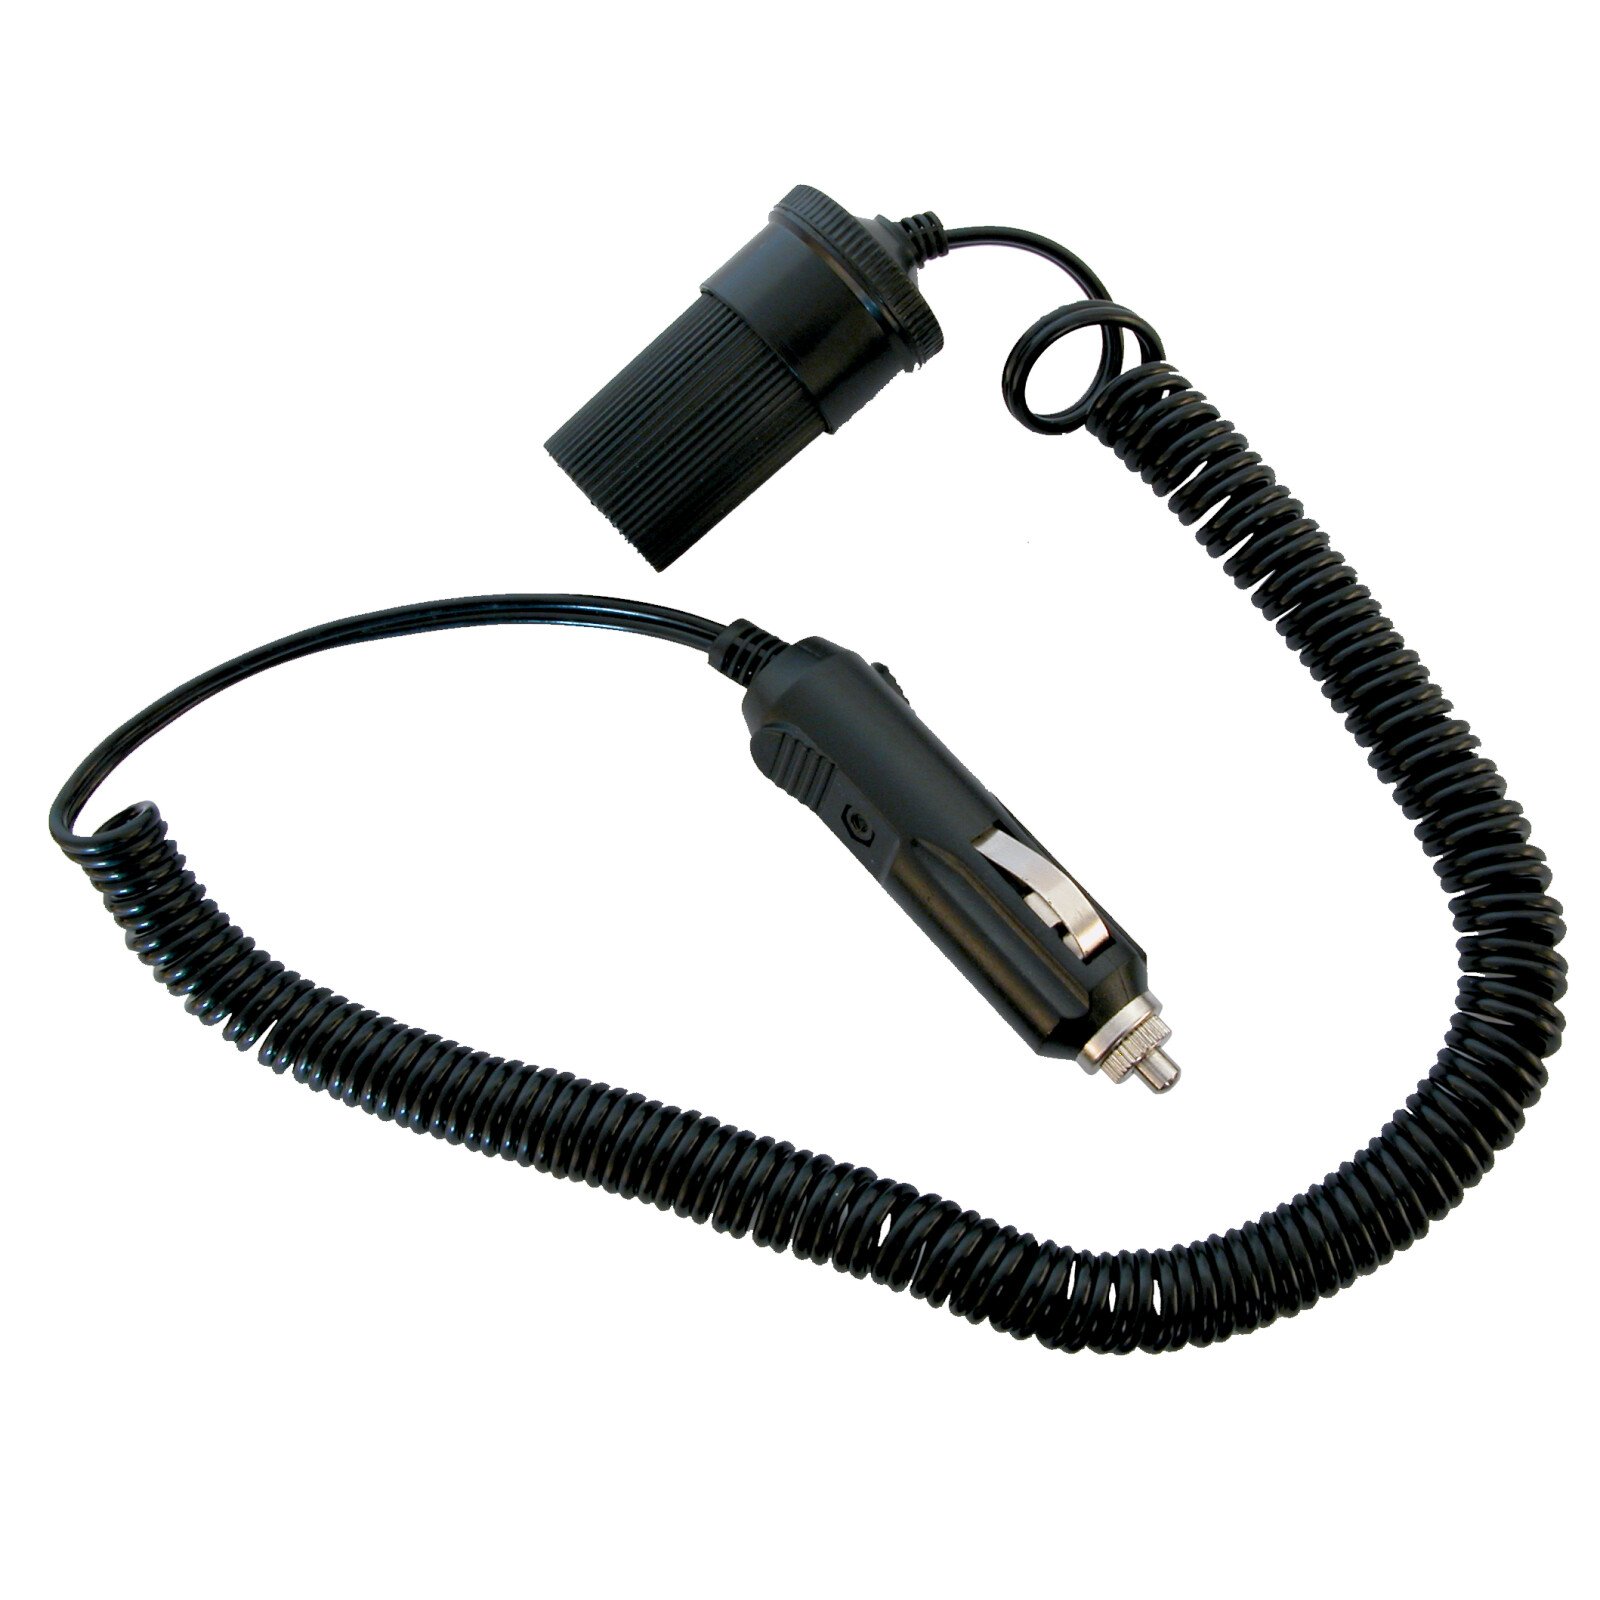 Prelungitor priza bricheta cu 3m cablu 12-24V max 5A Carpoint thumb